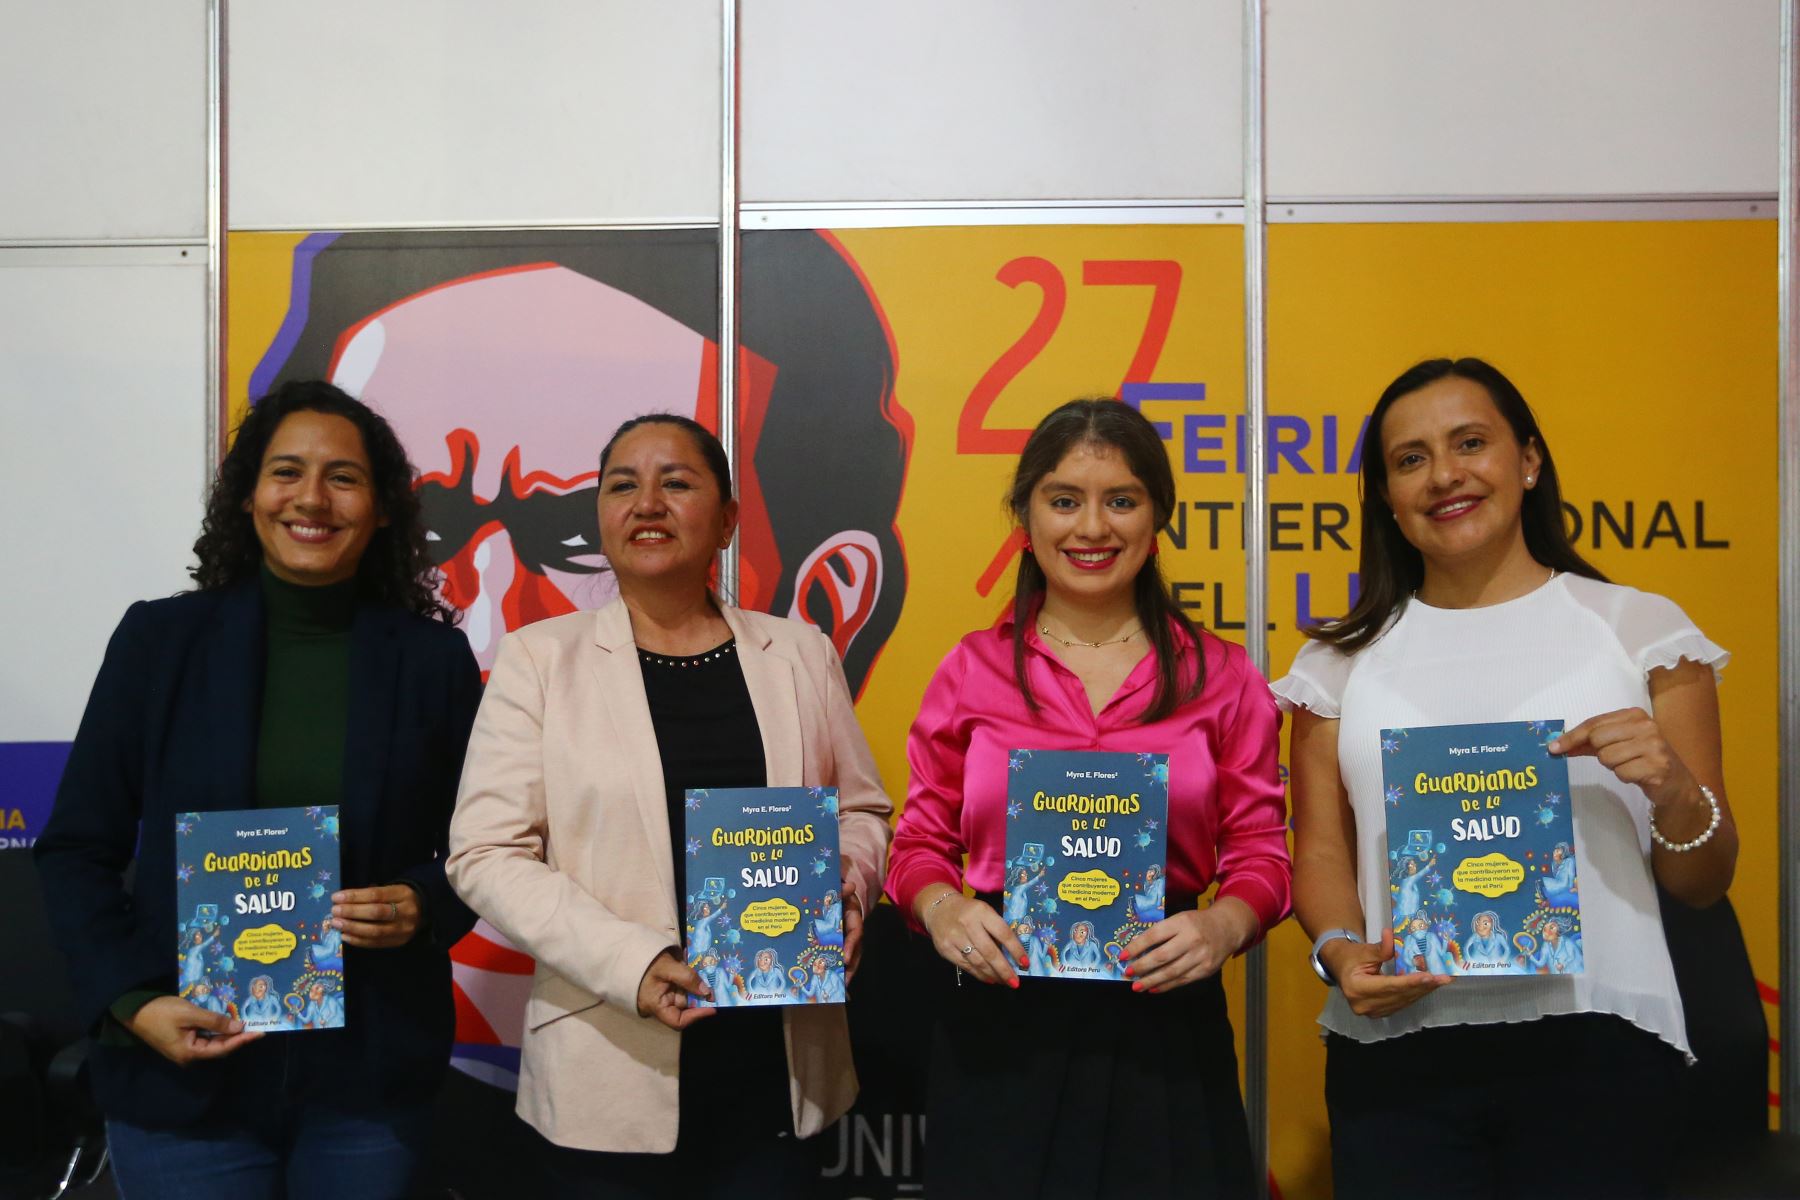 Magaly Blas es una de los personajes protagonistas del más reciente libro publicado por el Fondo Editorial de Editora Perú, Guardianas de la Salud, que cuenta las historias de 5 destacadas científicas peruanas. Foto: ANDINA/Daniel Bracamonte